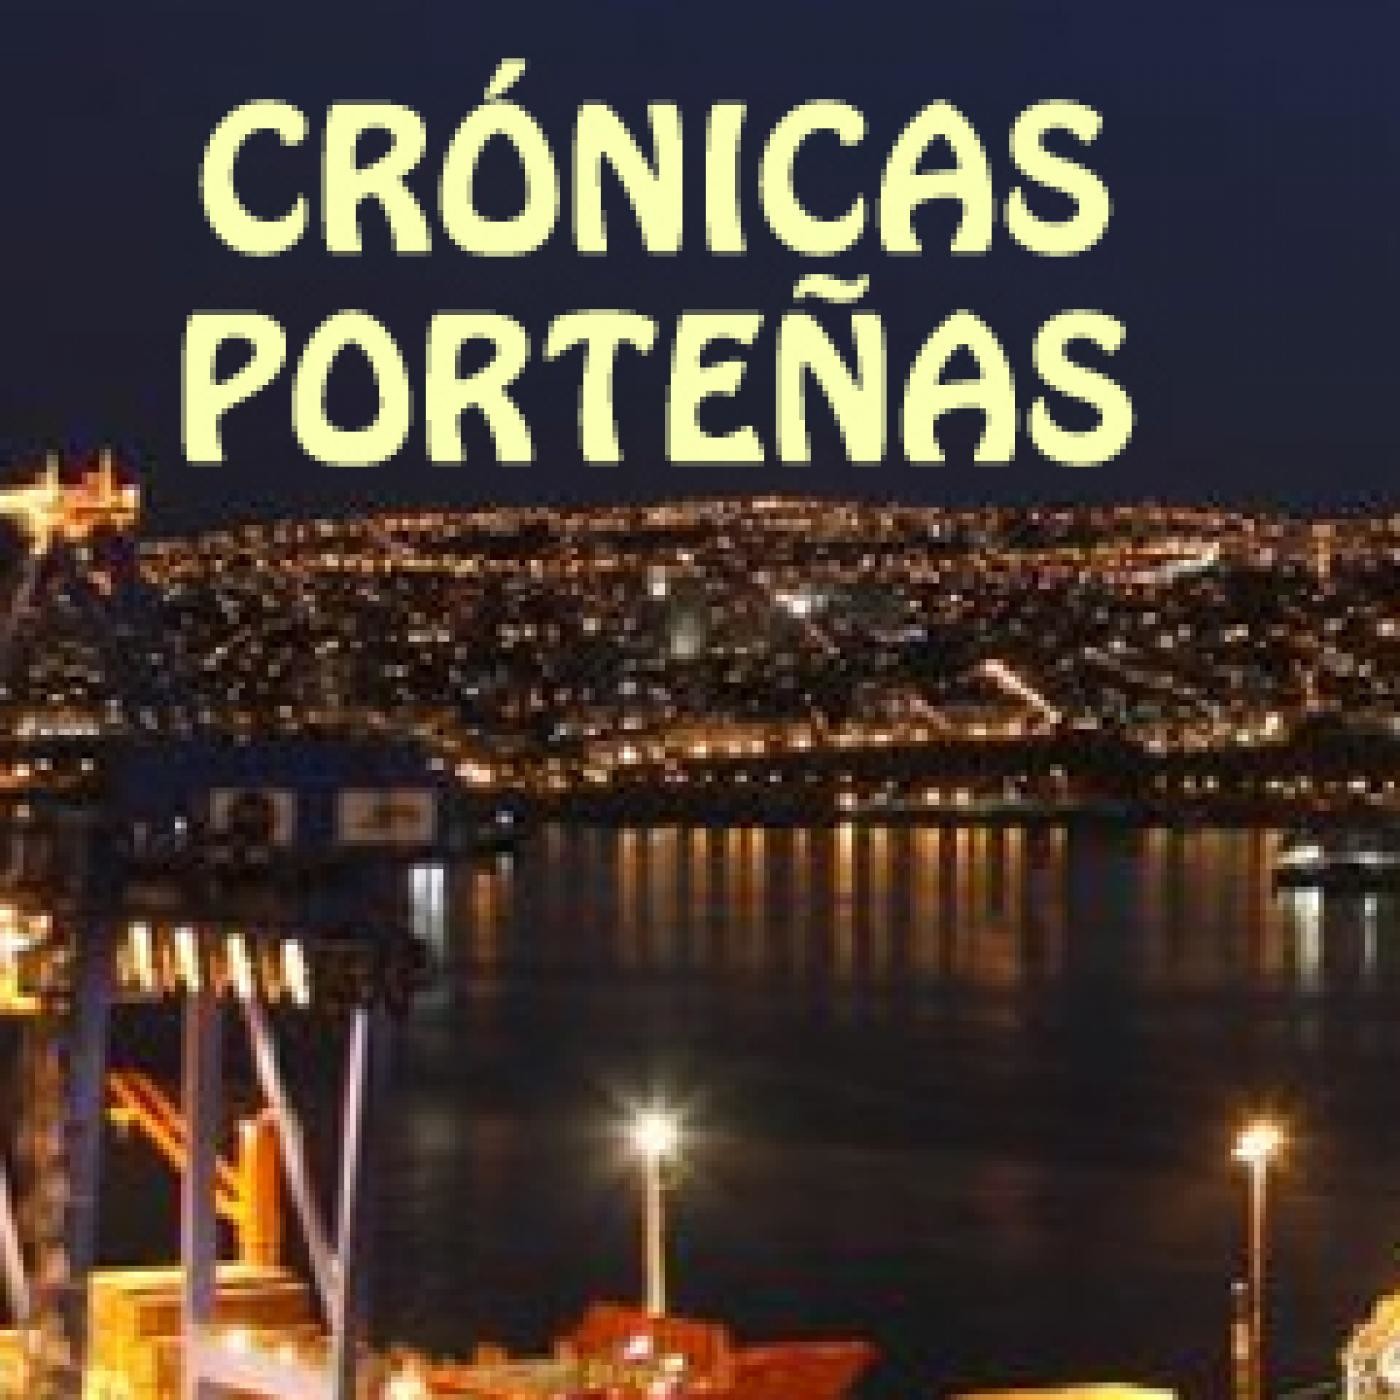 "Crónicas Porteñas de Valparaíso"